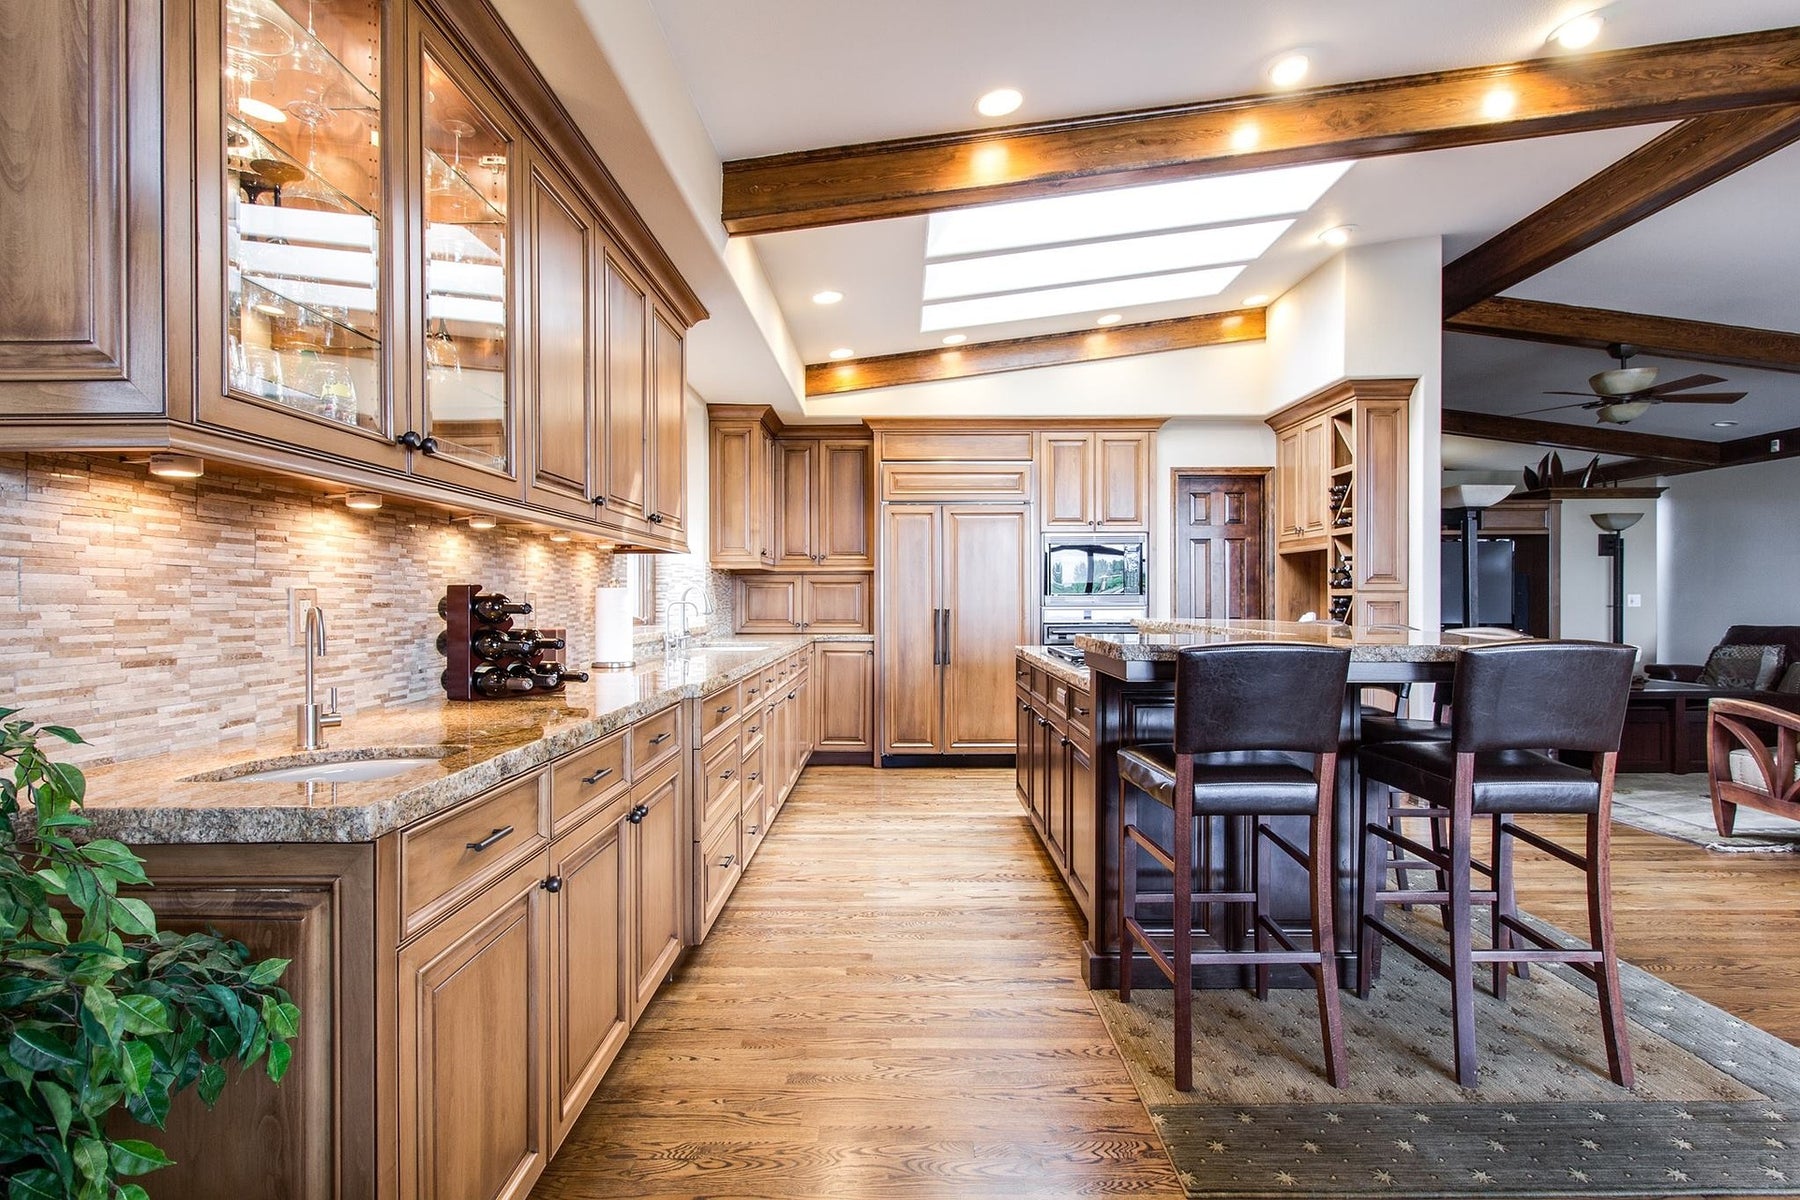 Hoe vind je de perfecte keuken bij de rest van jouw interieur?